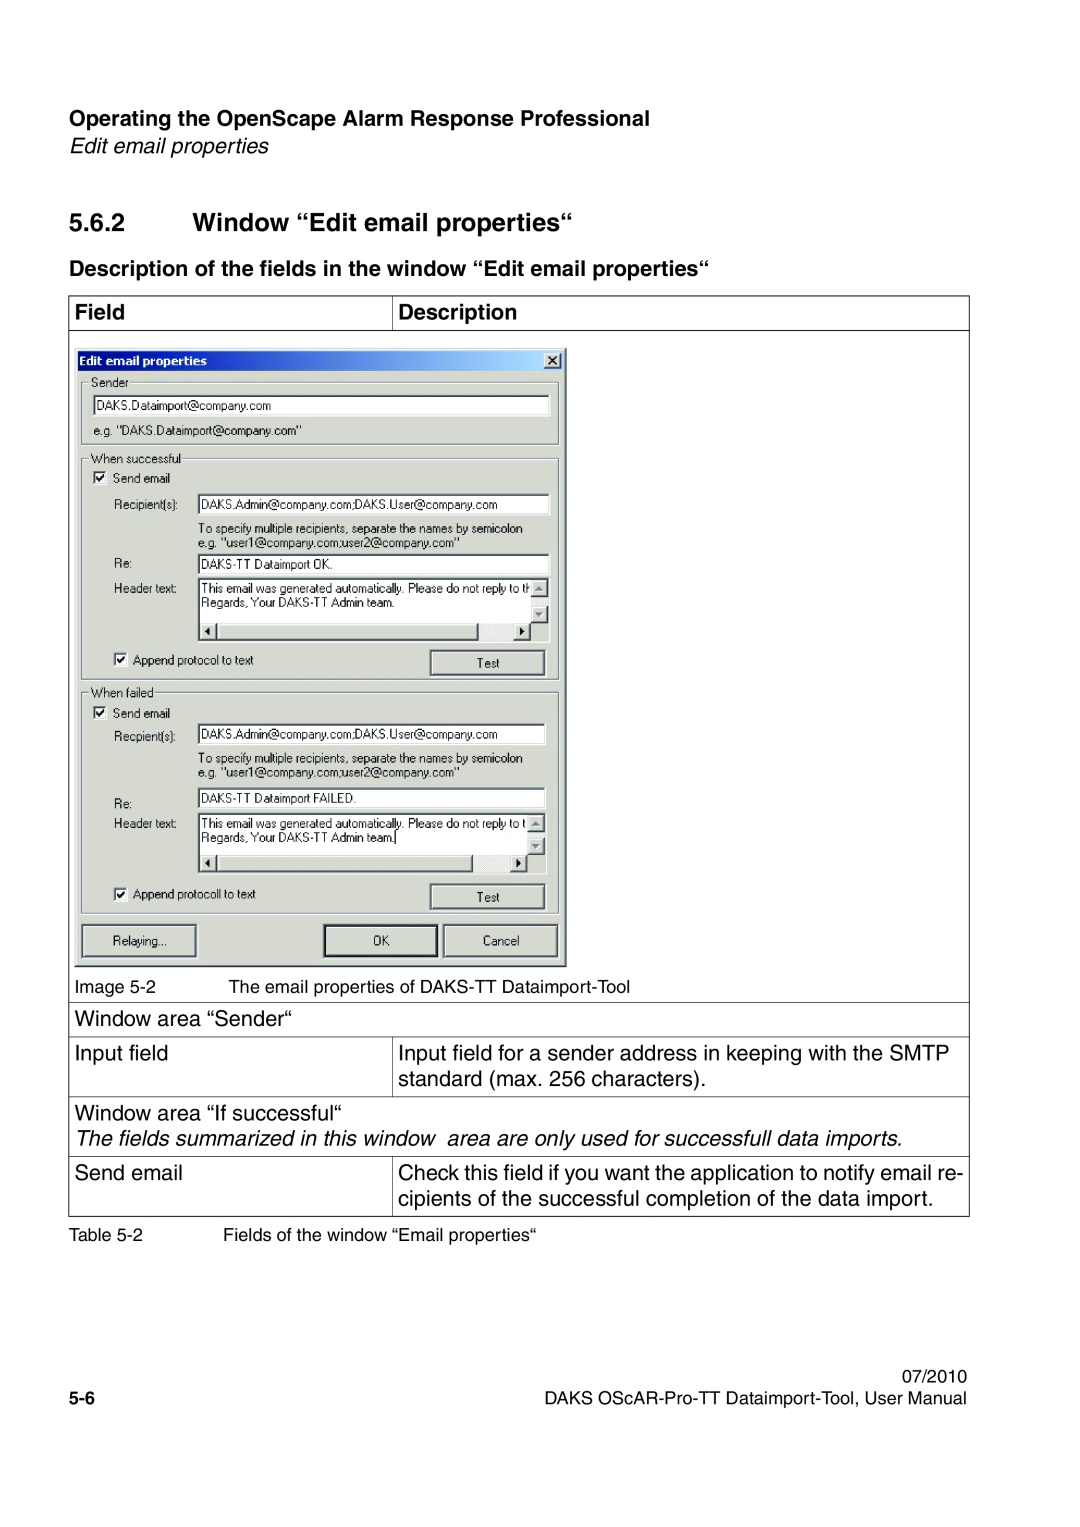 Siemens A31003-S1730-U102-1-7619 user manual 5.6.2Window “Edit email properties“, Field, Description 